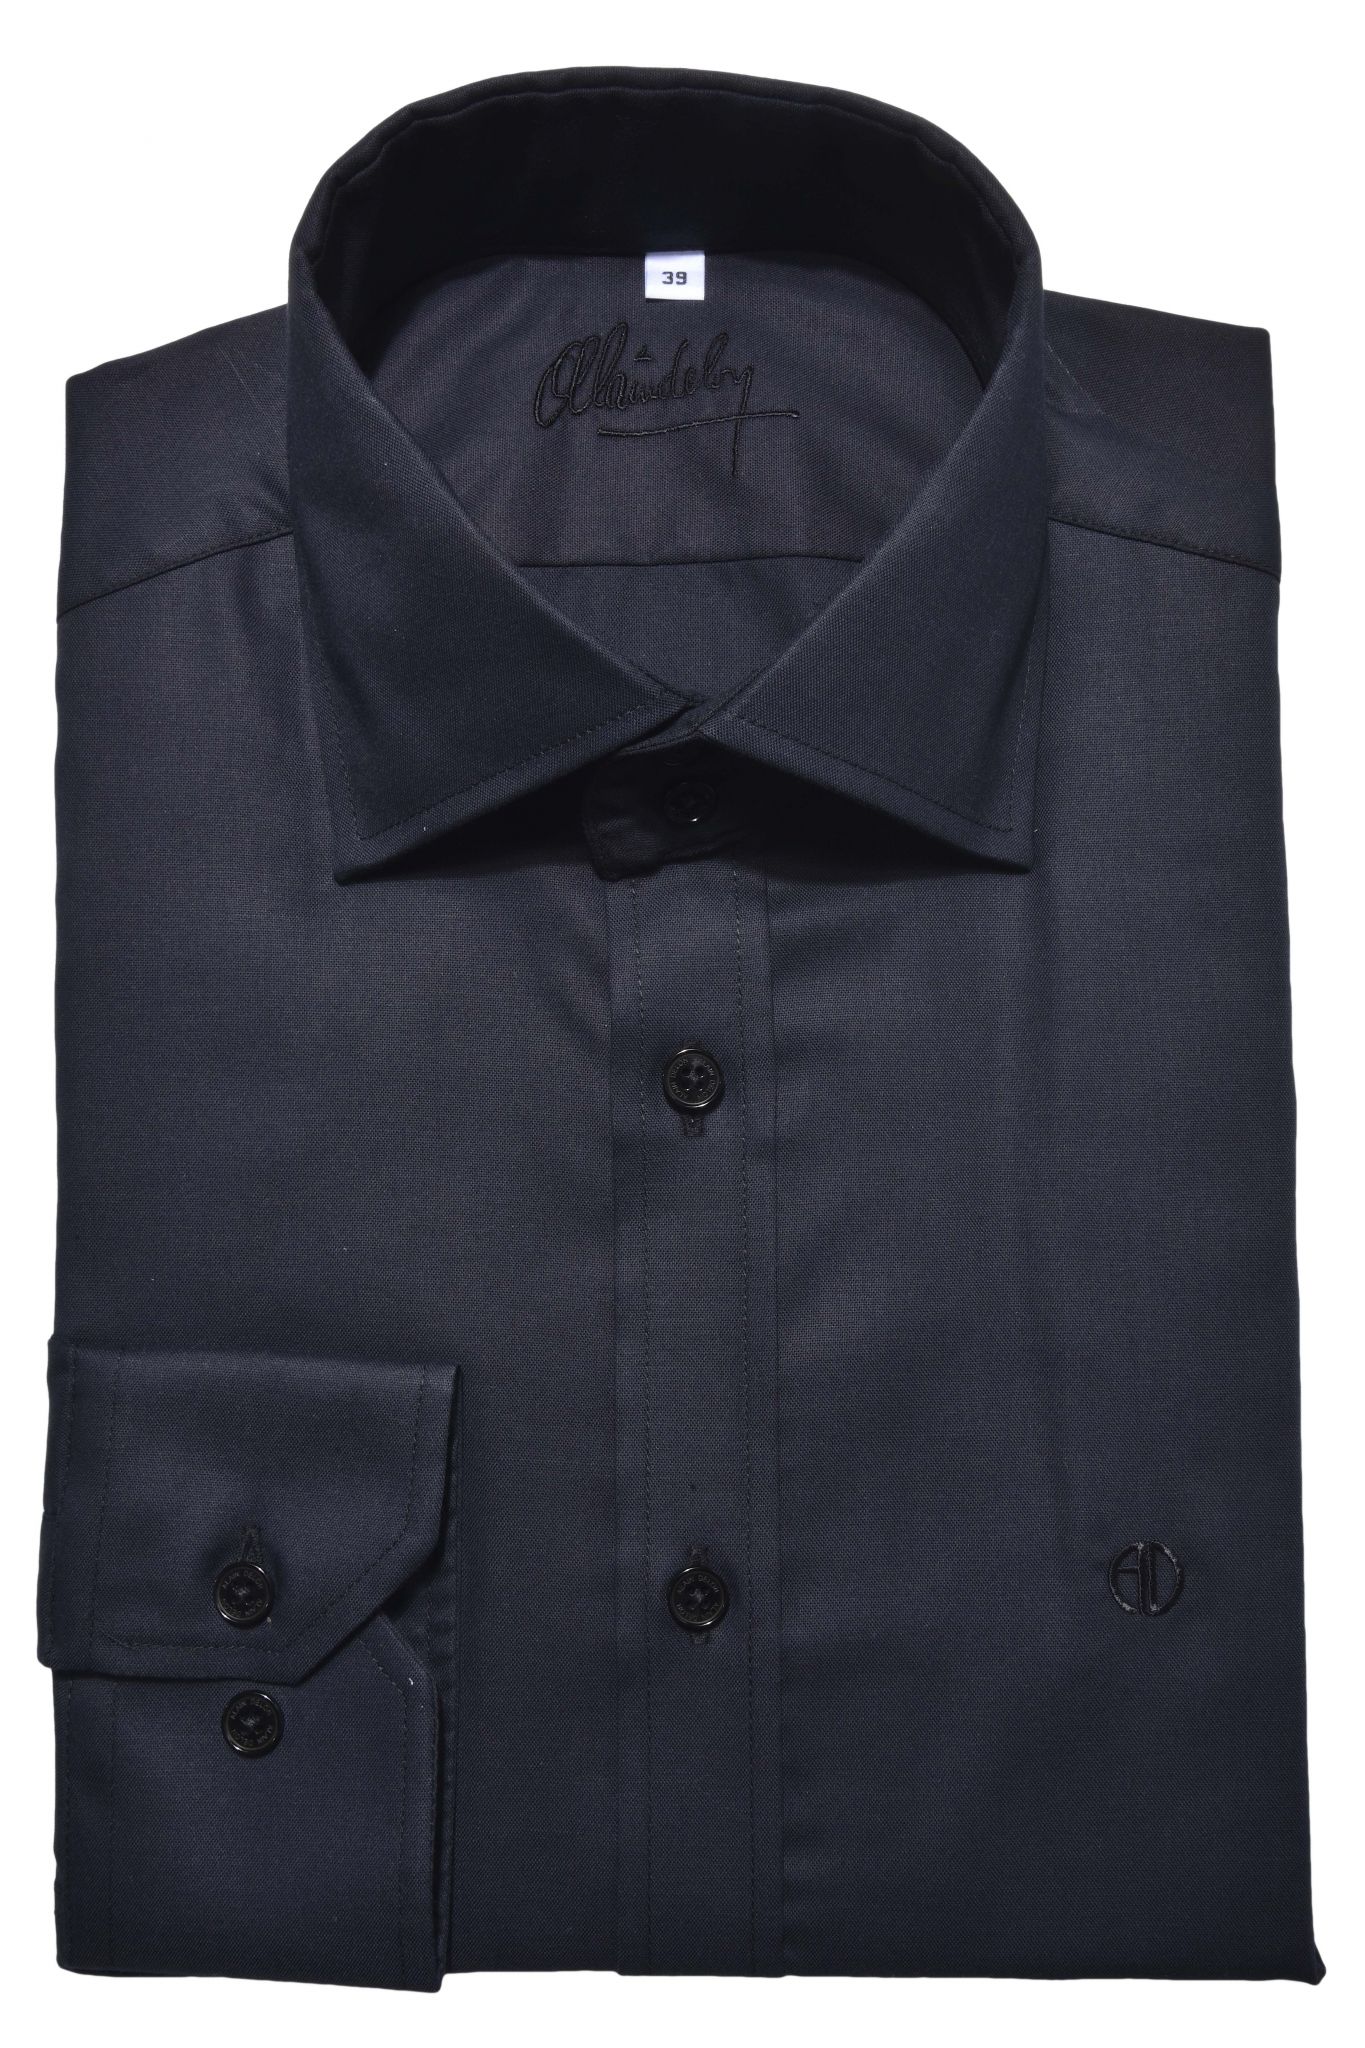 Black Classic Fit shirt - Shirts - E-shop | alaindelon.co.uk